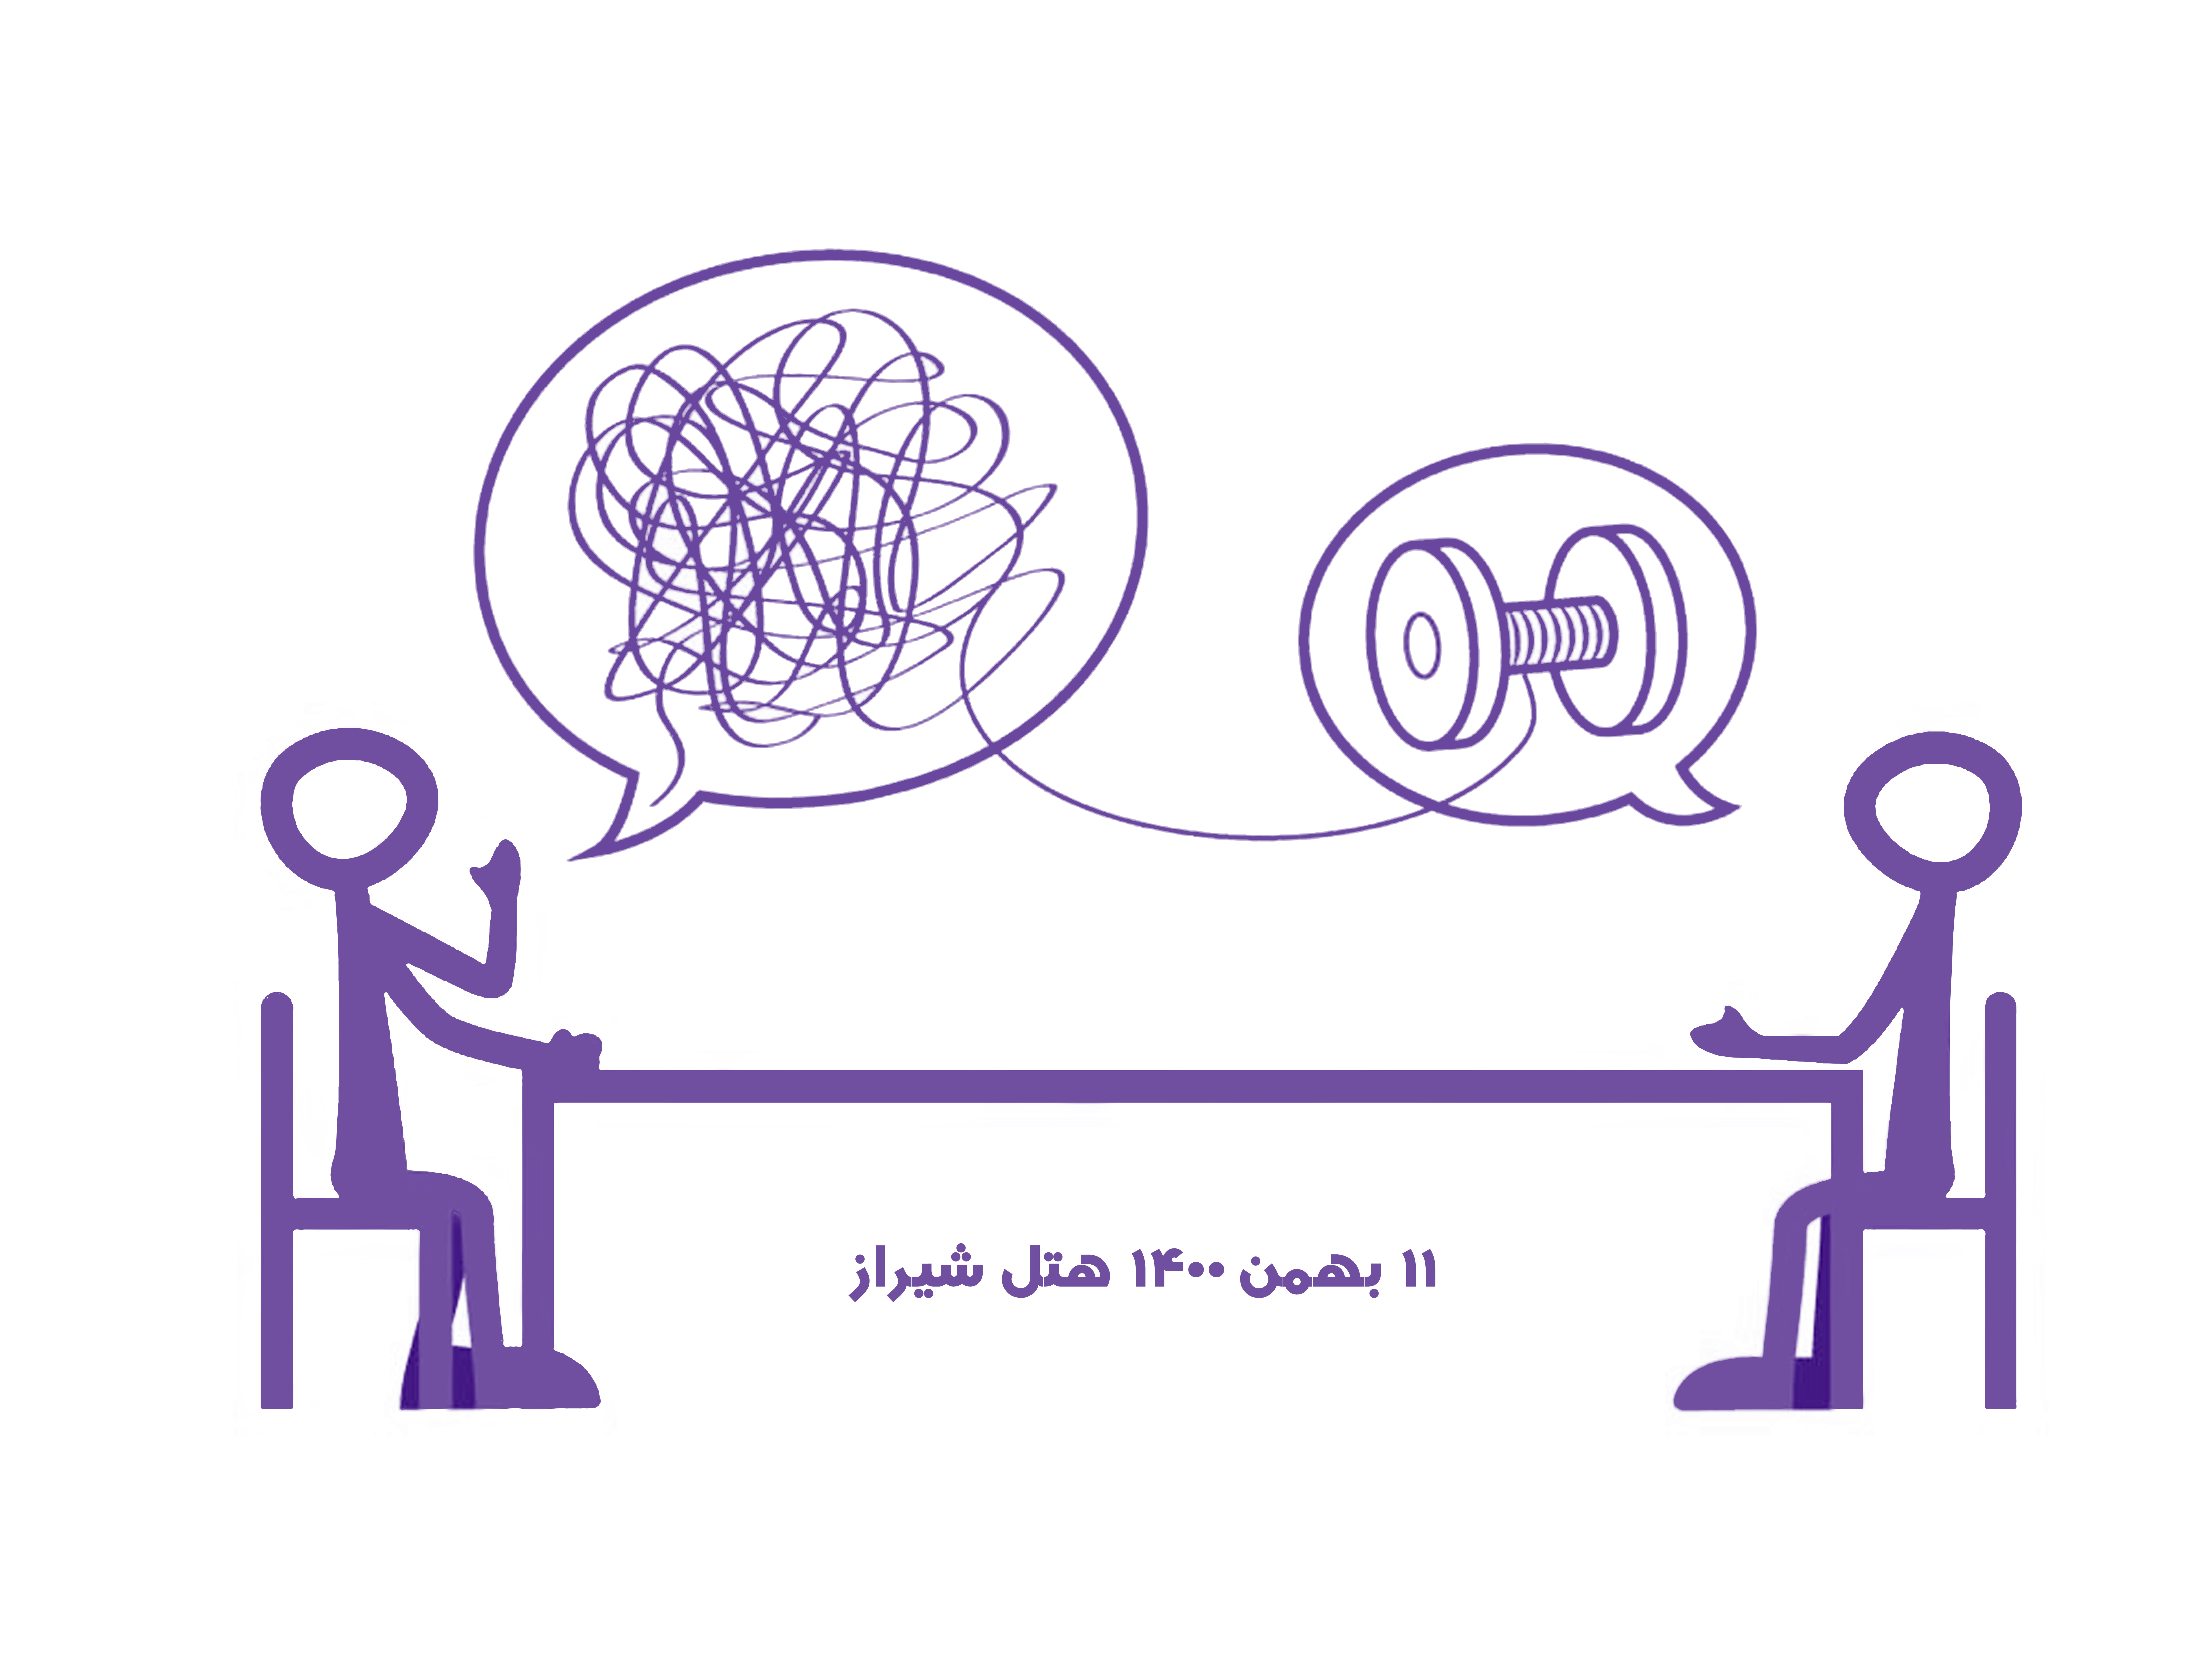 ثبت نام آنلاین در همایش کوچینگ دانش محور 11 بهمن